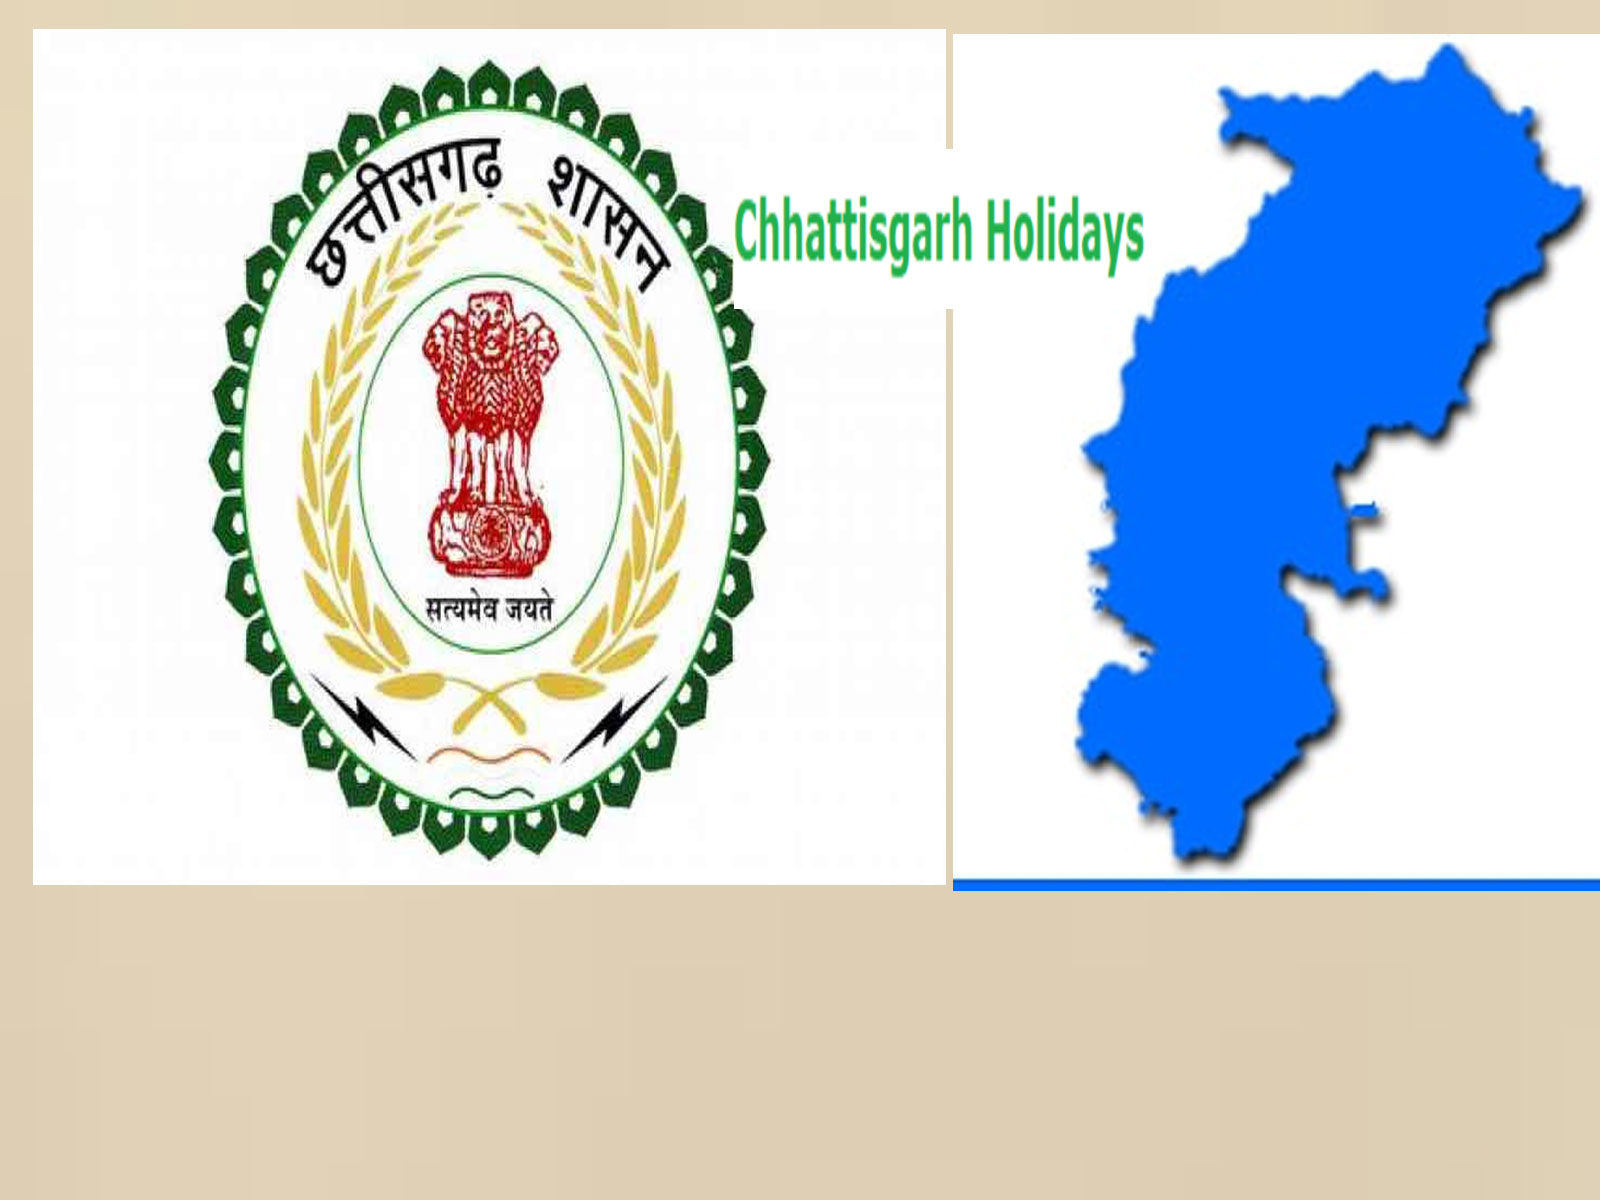 चॉक परियोजना को विश्व बैंक एवं भारत सरकार से स्वीकृति प्राप्त हो गई है। -  Chhattisgarh Chalk Project Approval from World Bank-Government of India